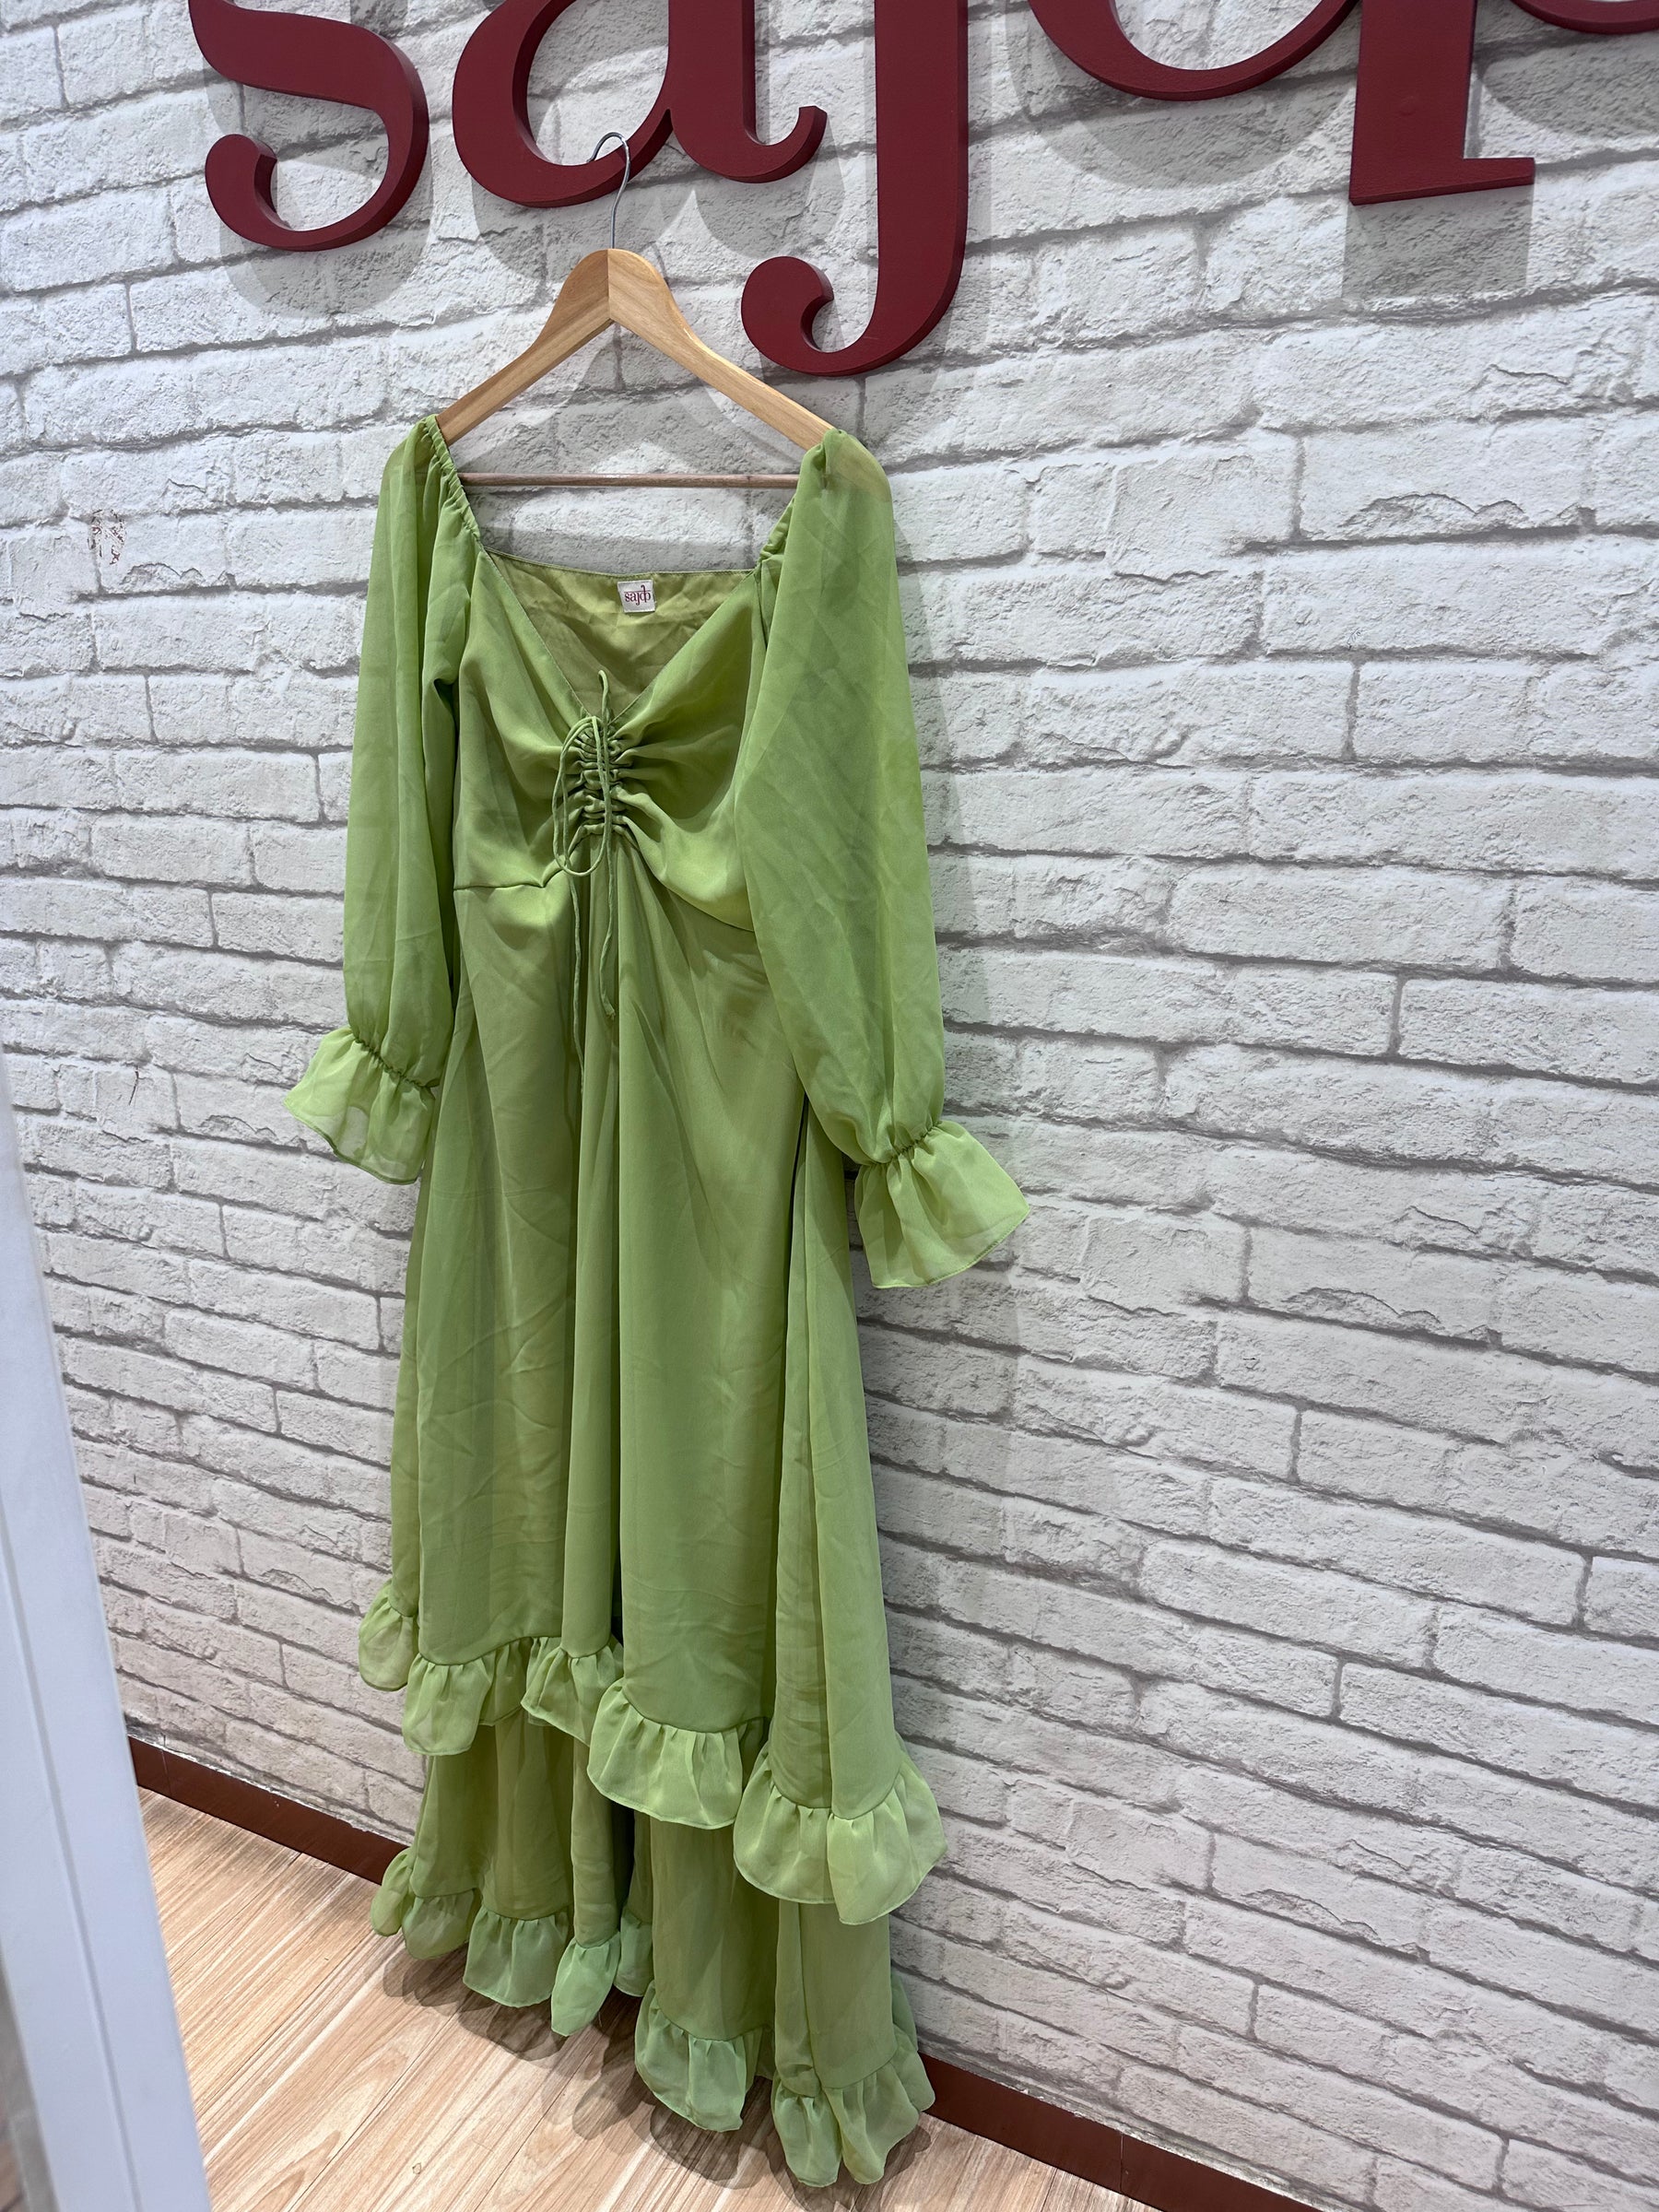 Green dreamy summer dress